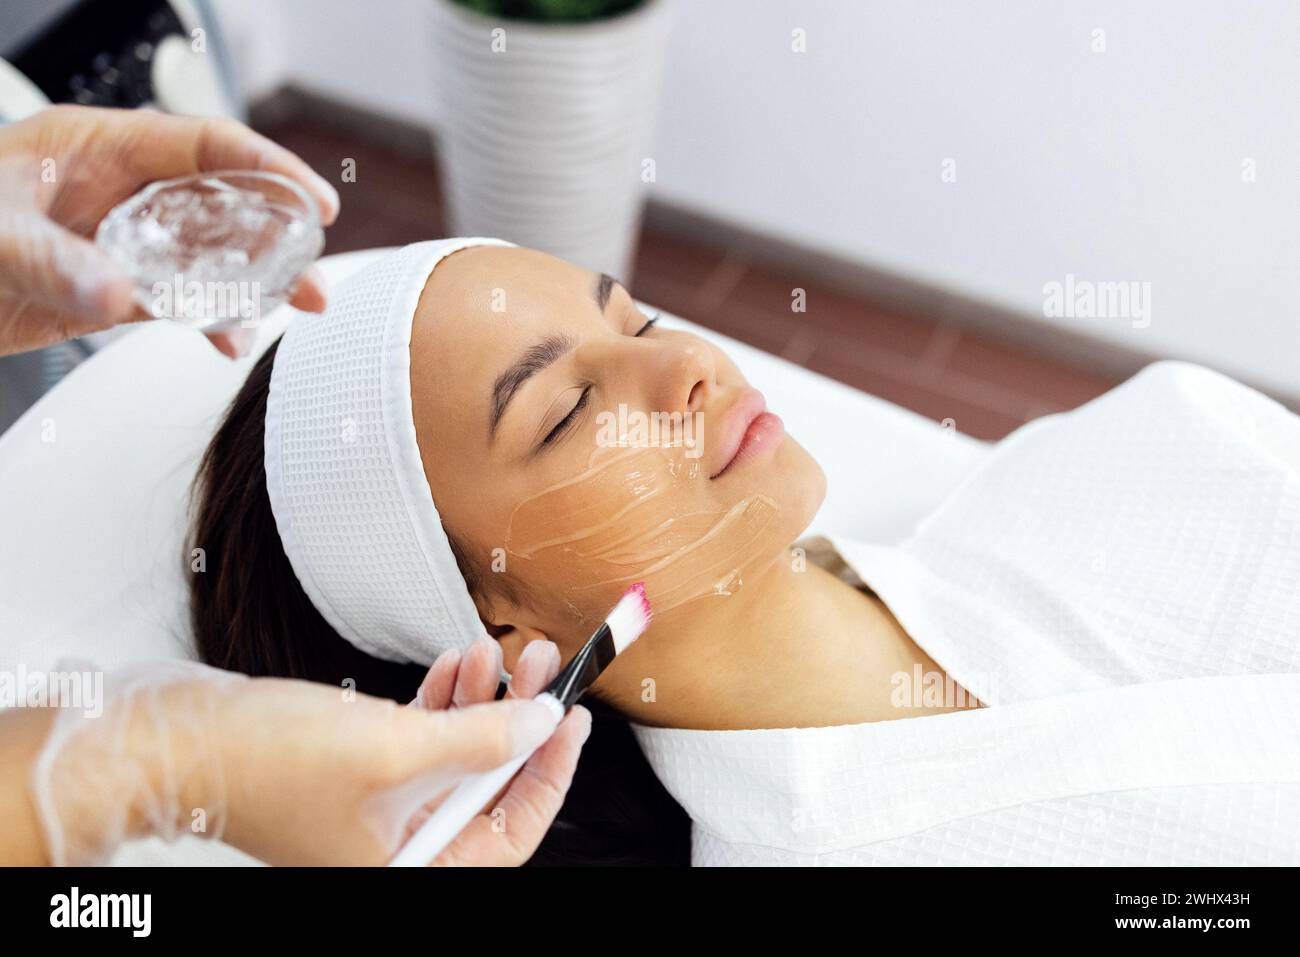 Der Schönheitsmeister wendet eine verjüngende Maske auf das Gesicht des Kunden an. Stockfoto